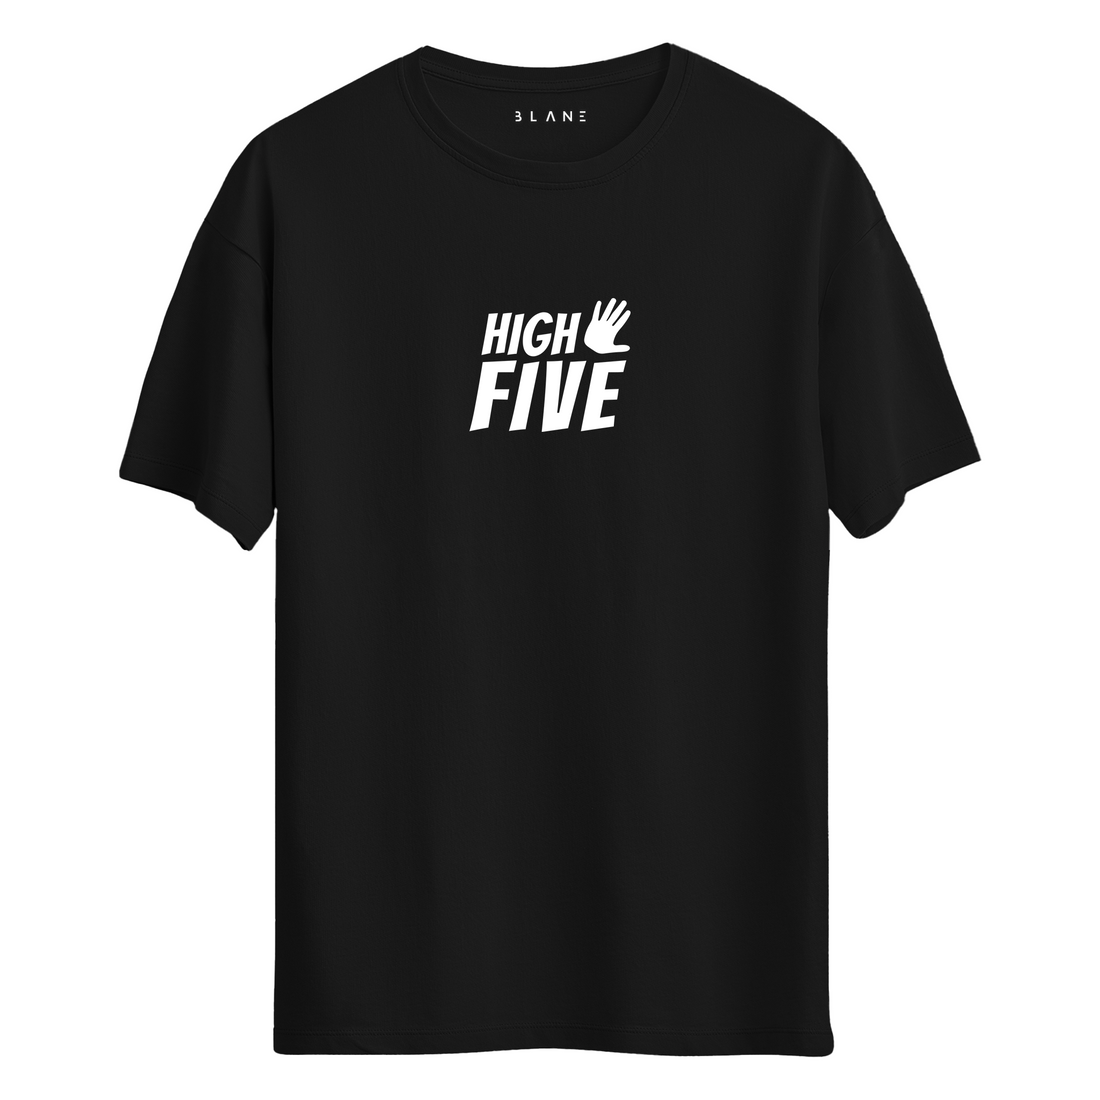 High Five - T-Shirt